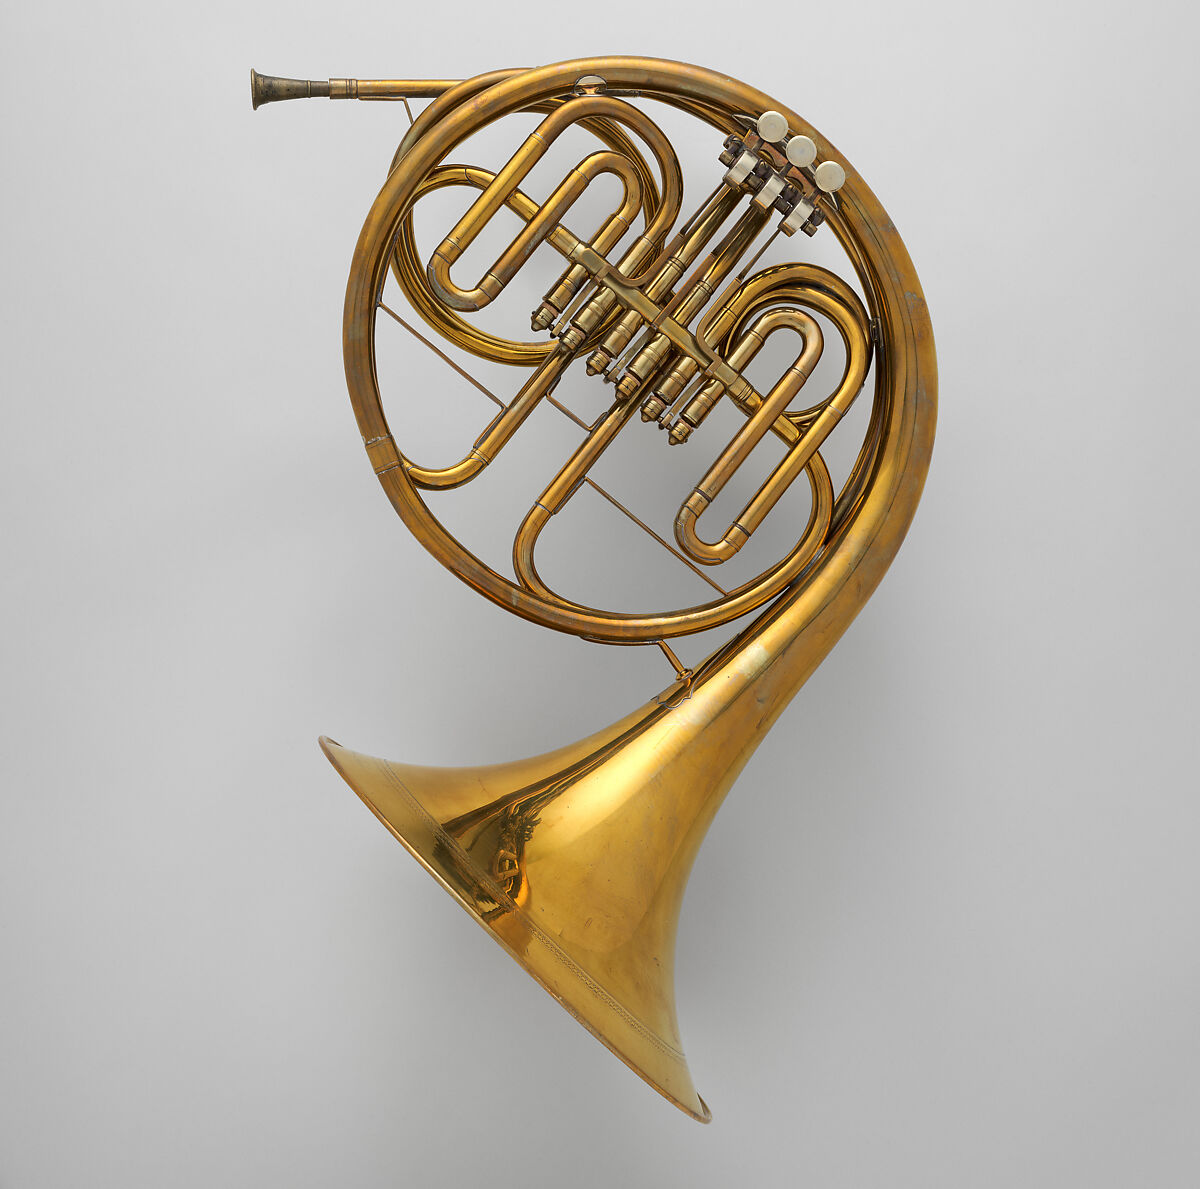 Horn in F, Ignaz Lorenz (Austrian, Linz 1827–1886 Vienna), Brass, nickel-silver, Austrian 